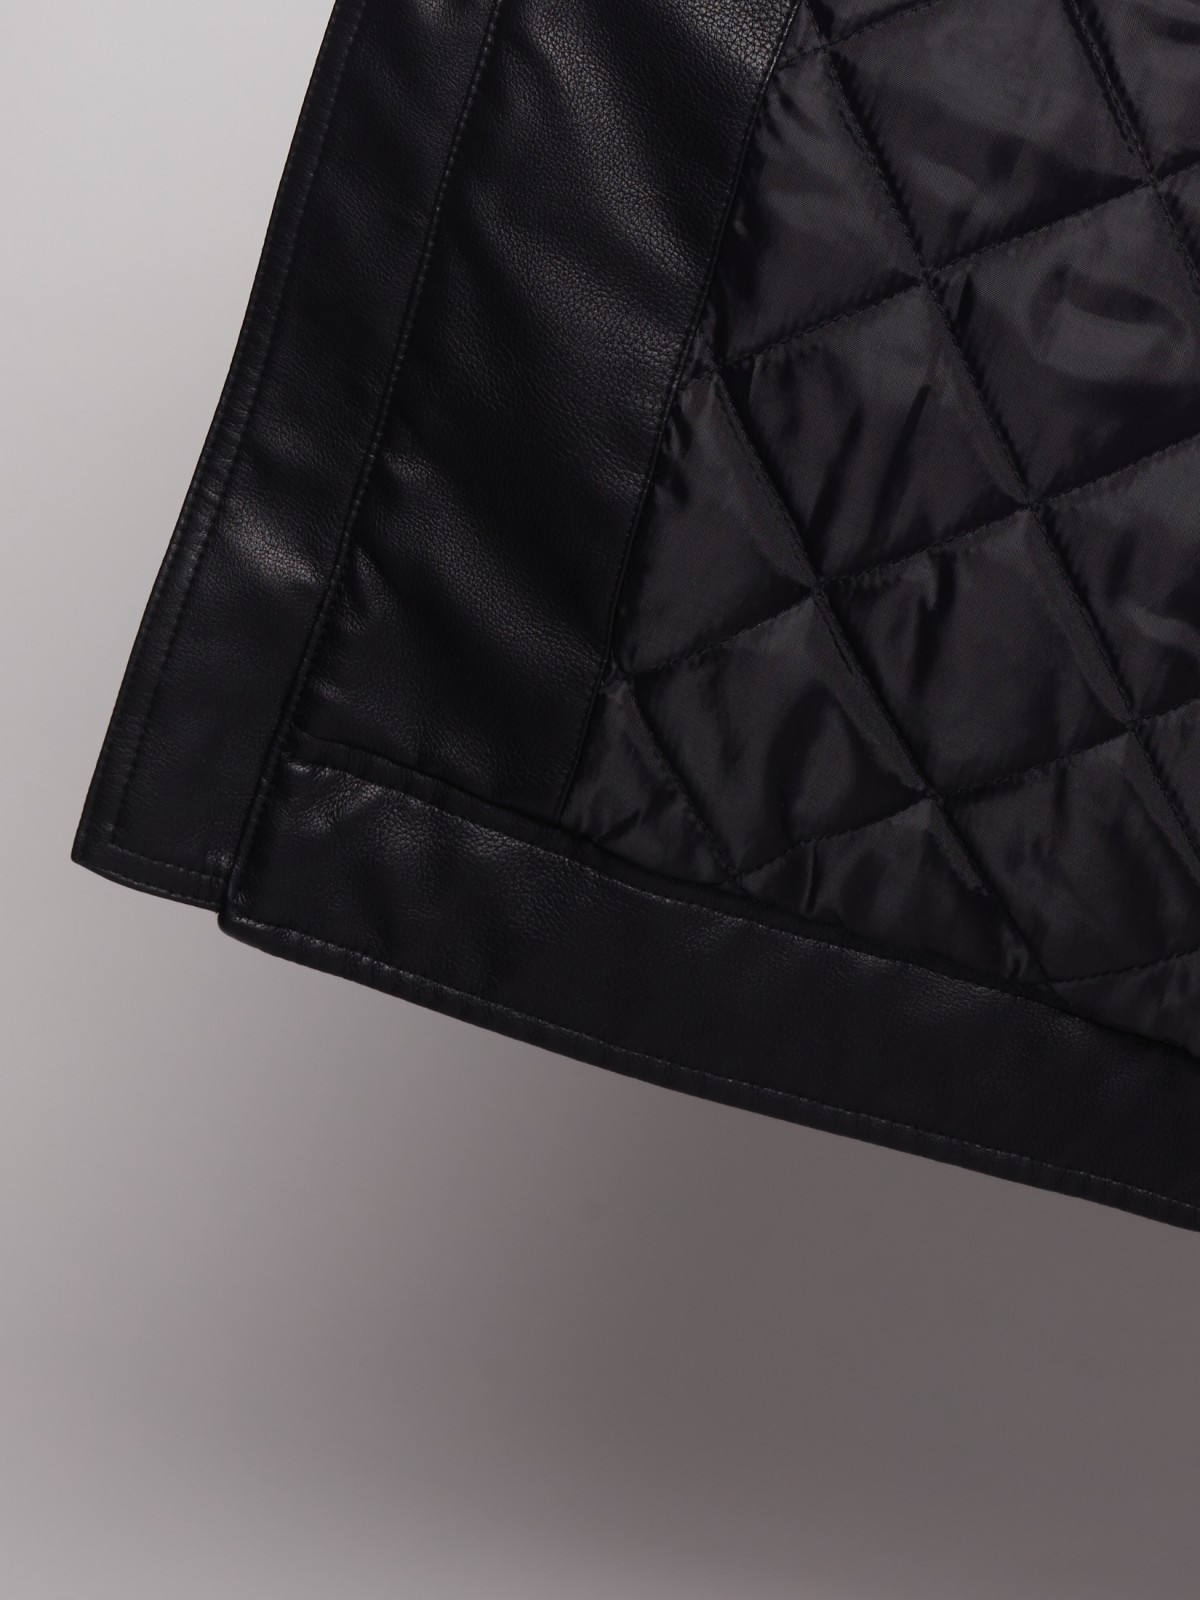 Куртка zolla 013135150144, цвет черный, размер S - фото 6